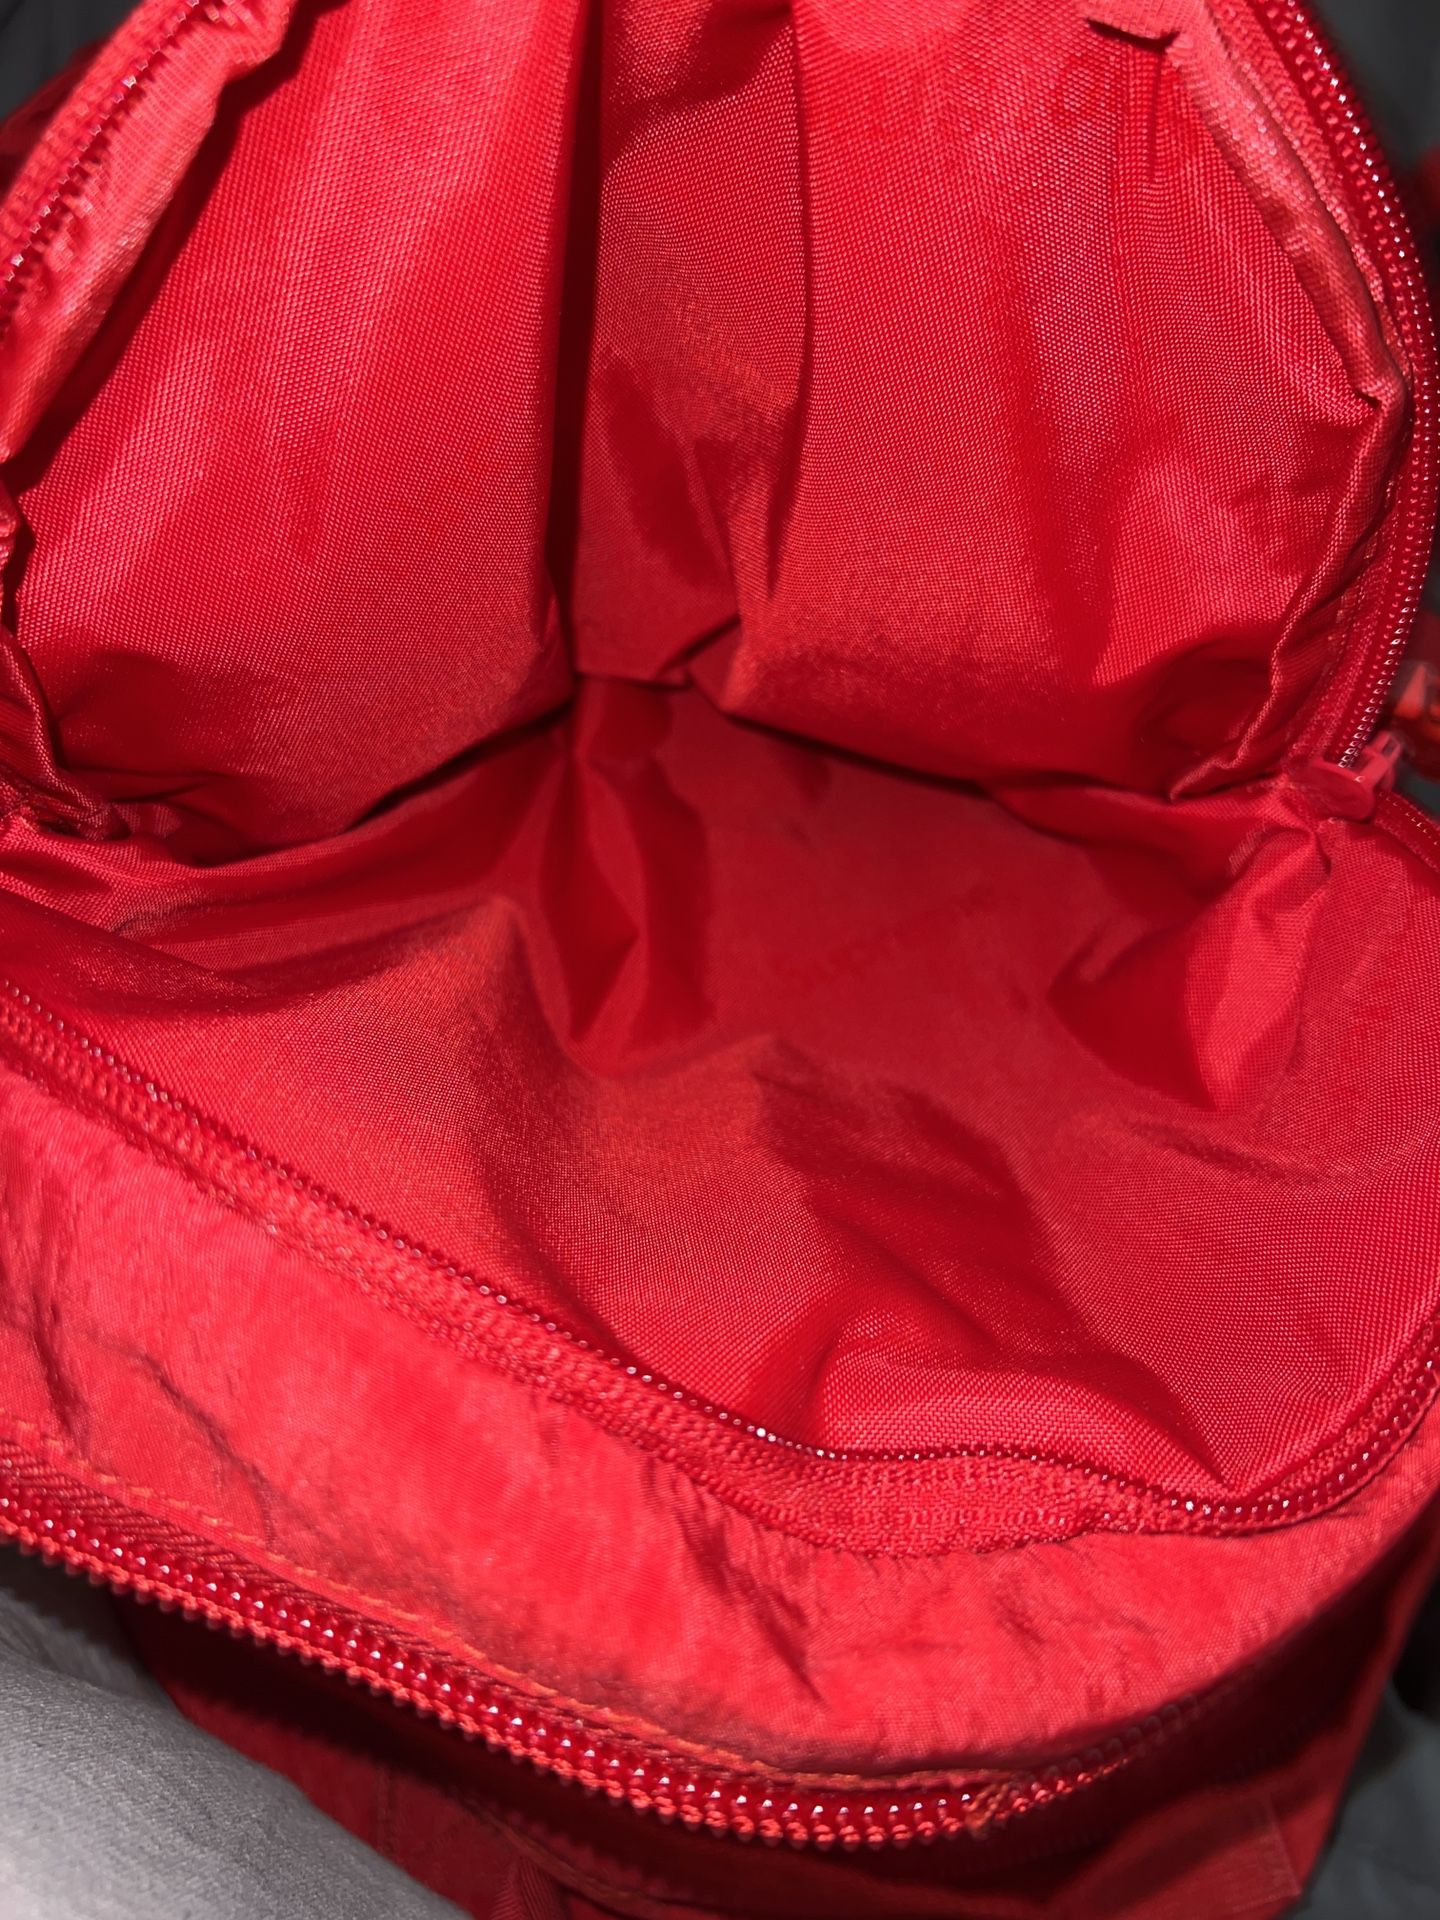 Supreme 2019 Box Logo Backpack - Red Backpacks, Bags - WSPME26712